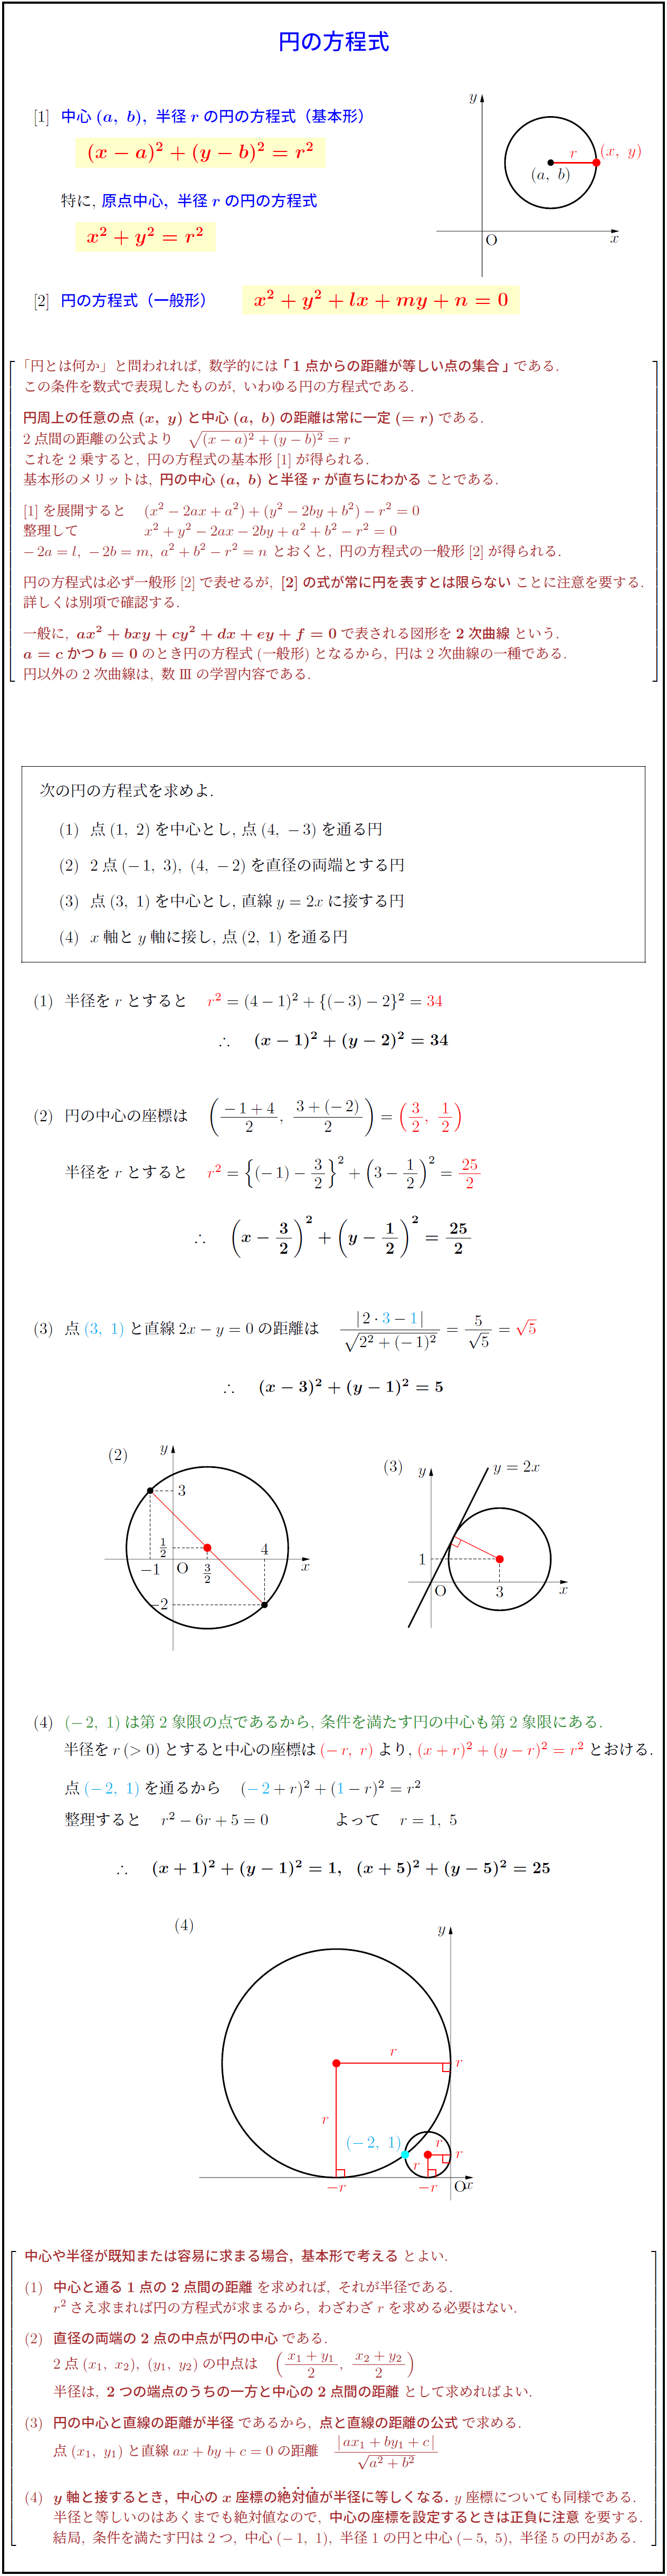 高校数学 円の方程式の基本形と一般形 座標軸と接する円 受験の月